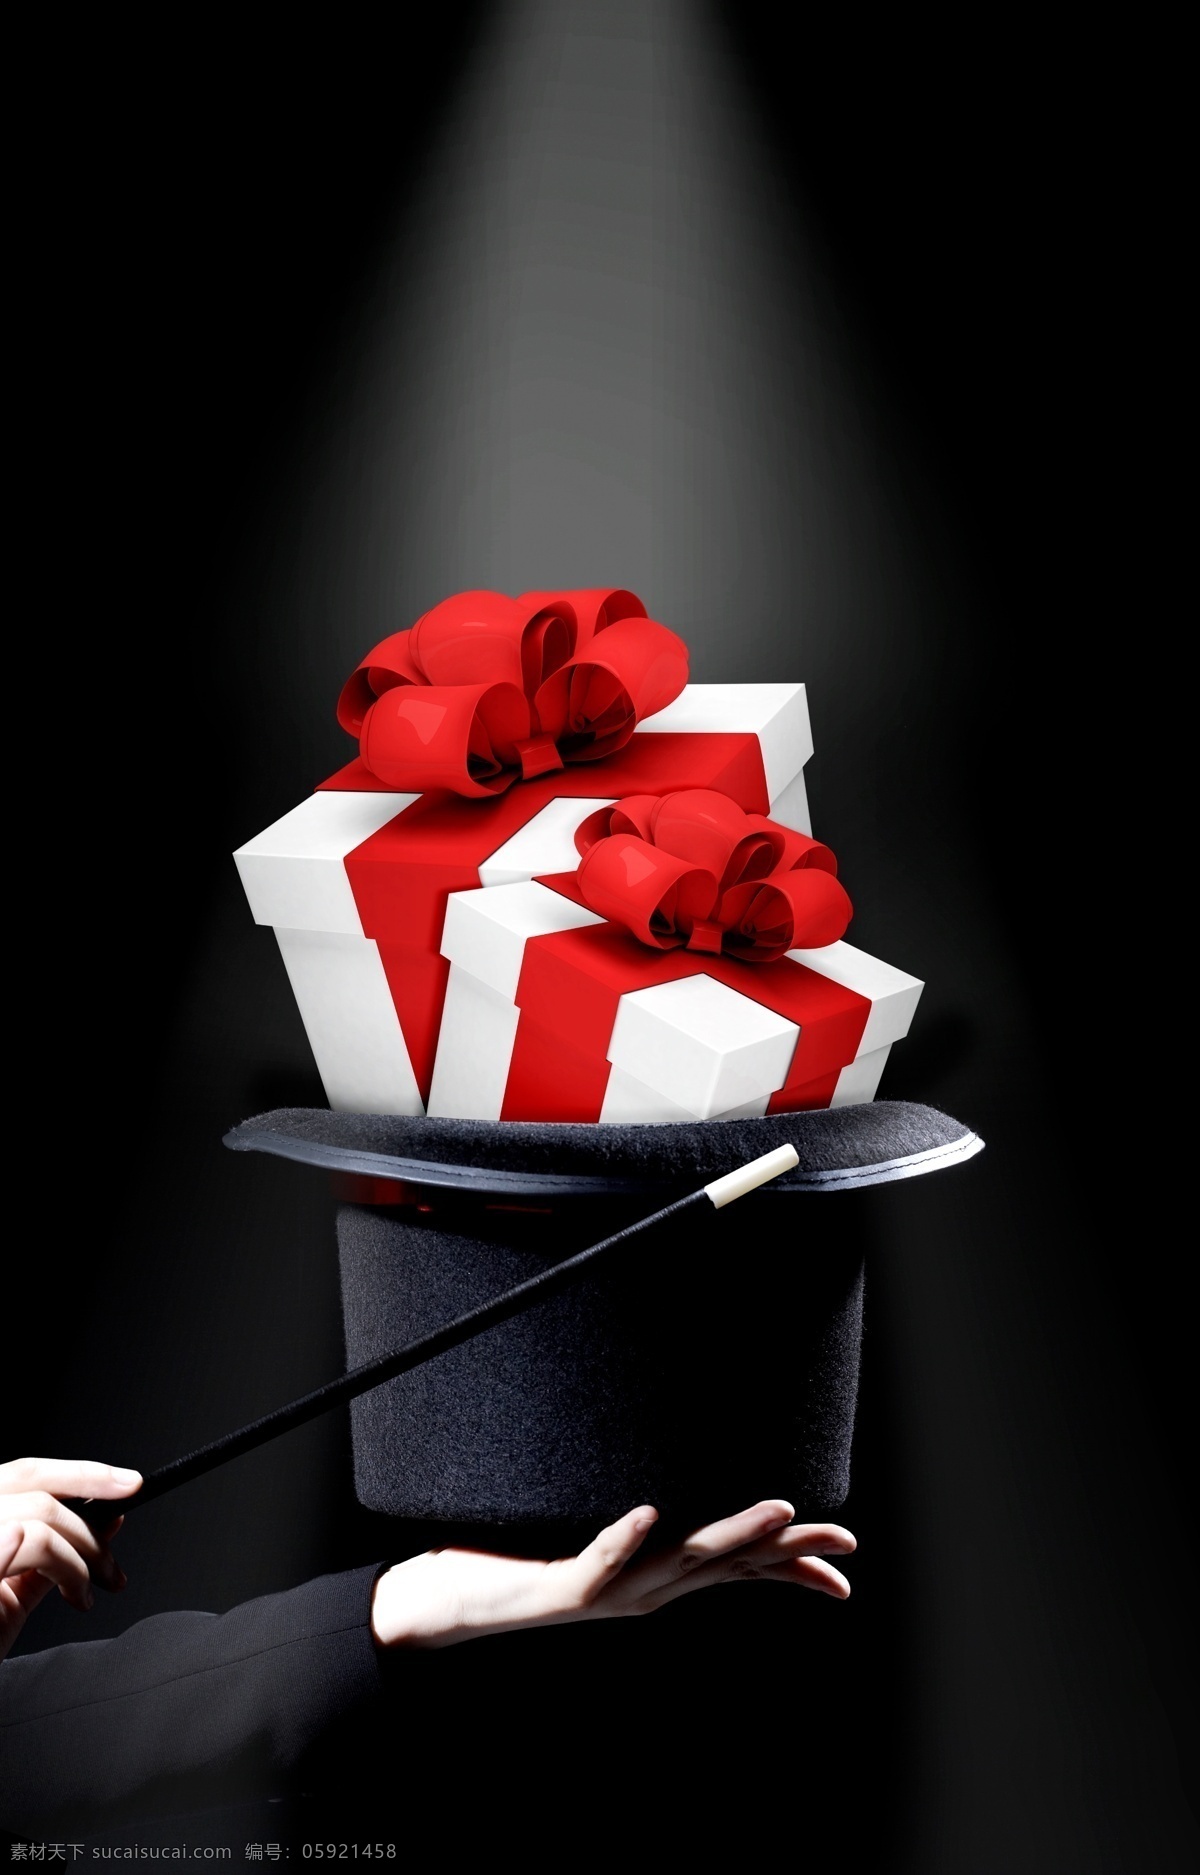 魔术师 手里 礼包 模板下载 魔术师帽子 魔棒 礼物 礼品 购物促销 优惠促销 其它模板 广告设计模板 psd素材 黑色